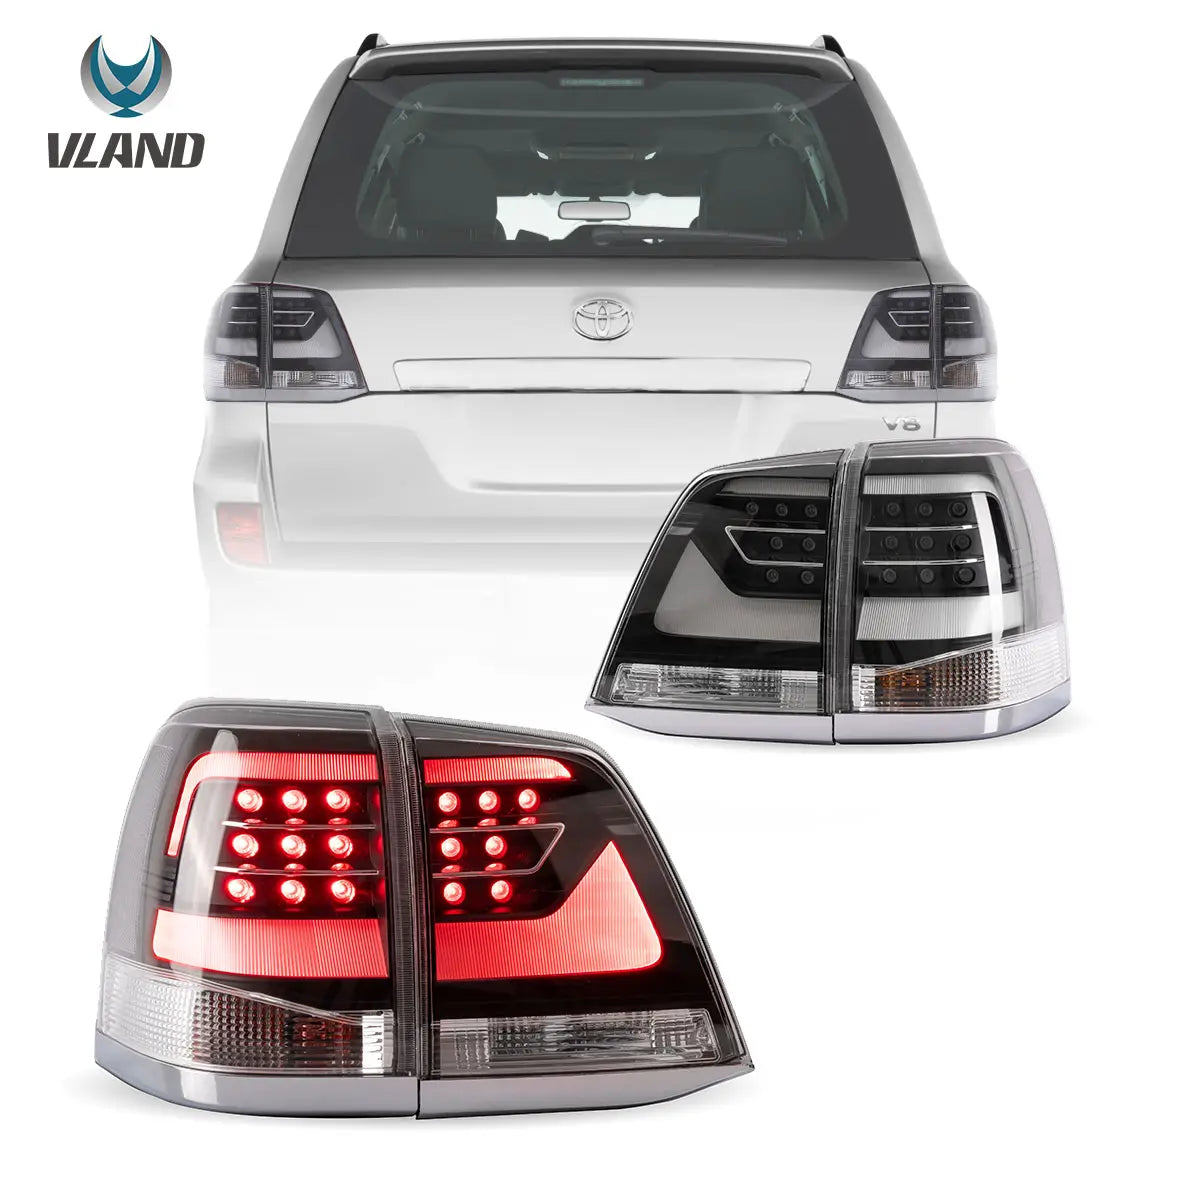 08-11 Toyota Land Cruiser 200 Series Vland LEDテールライト、アンバーウィンカー付き